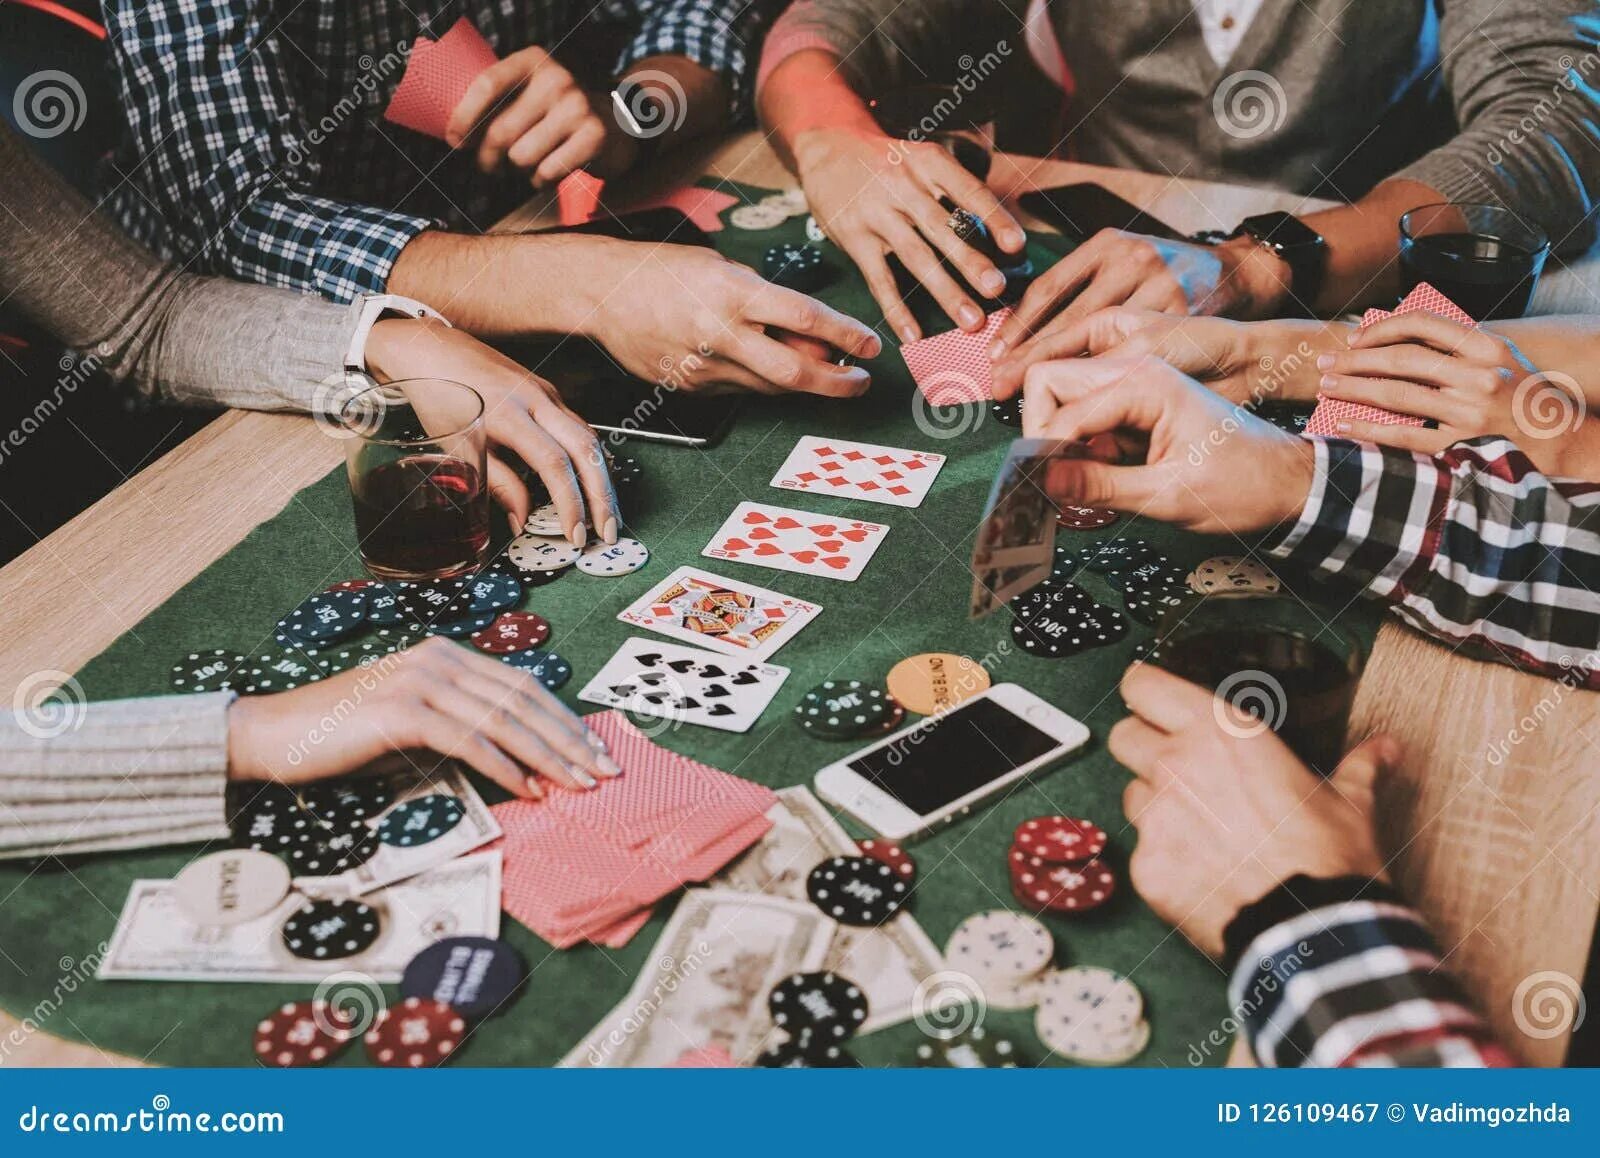 Игра в карты дома. Люди играющие в Покер. Домашний Покер. Покер люди за столом. Люди играющие в карты.